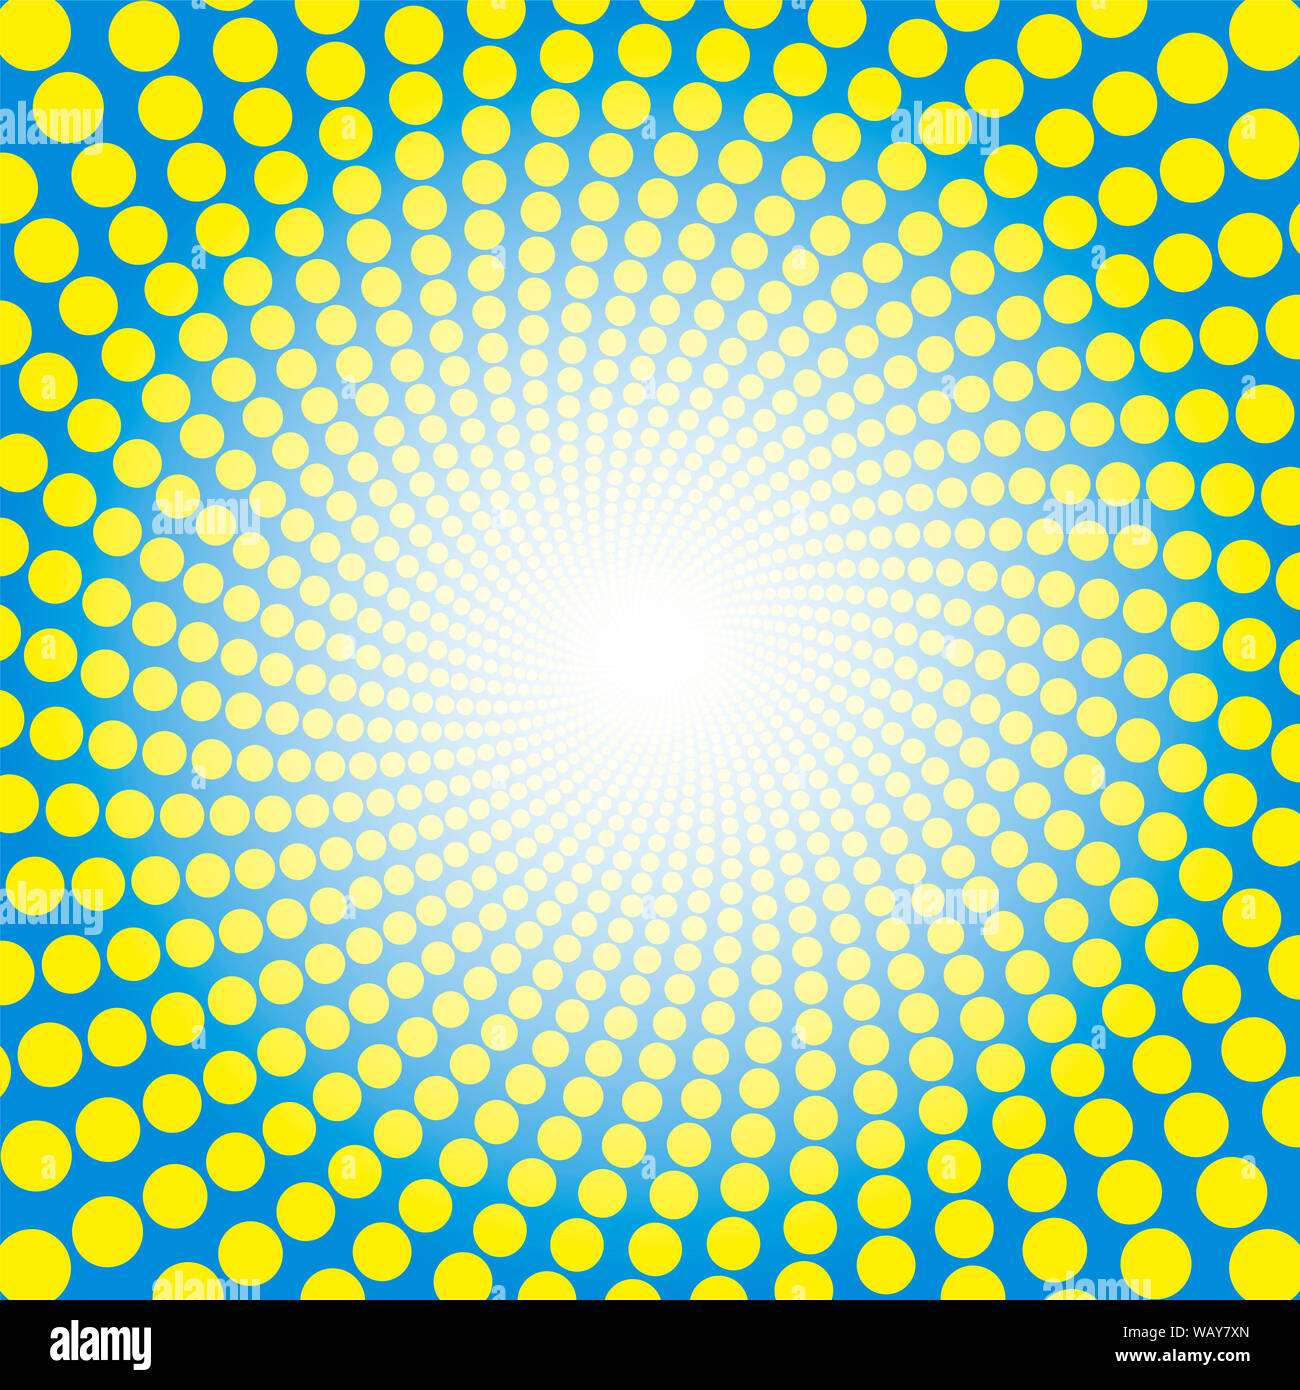 Spirale bleu jaune. Tunnel en pointillés avec Light Centre - illustration fond circulaire torsadée, hypnotique et psychédélique. Banque D'Images